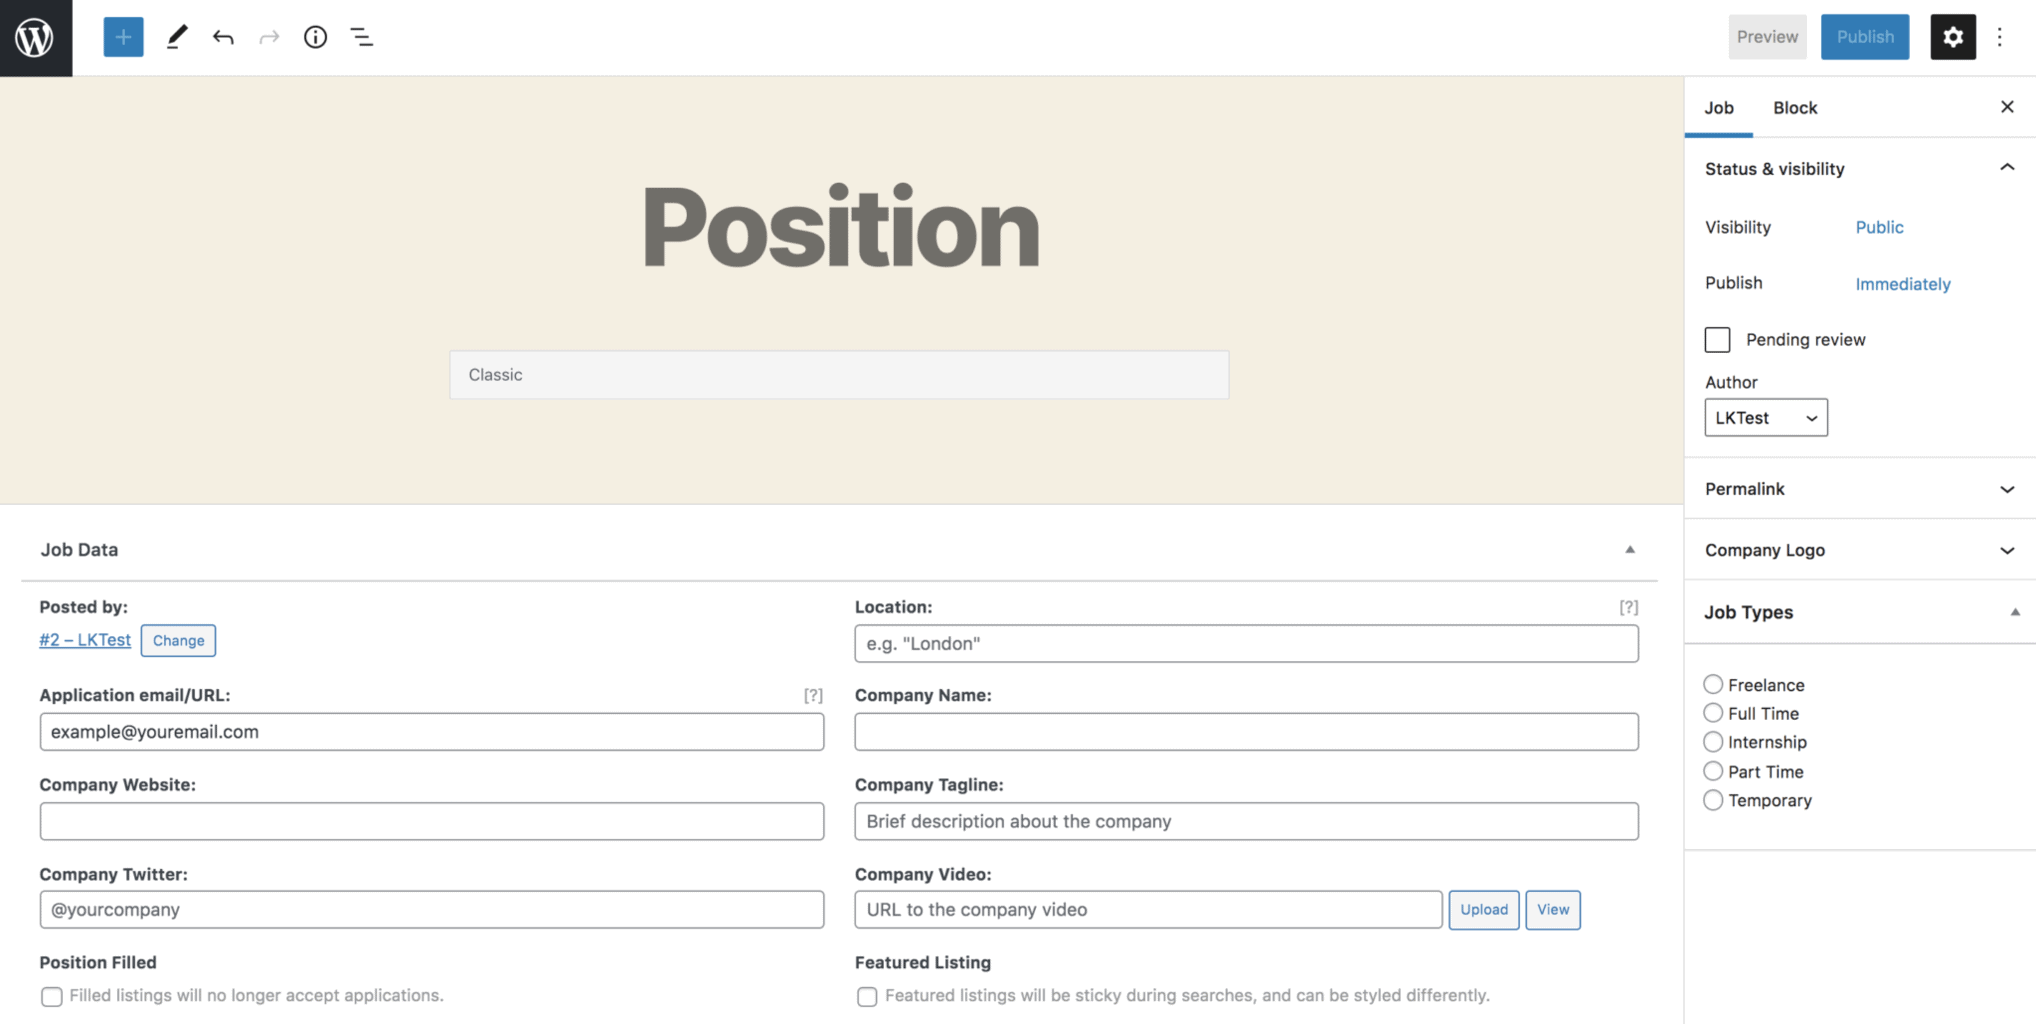 Comment créer un tableau d'affichage des offres d'emploi dans WordPress  avec le plugin WP Job Manager